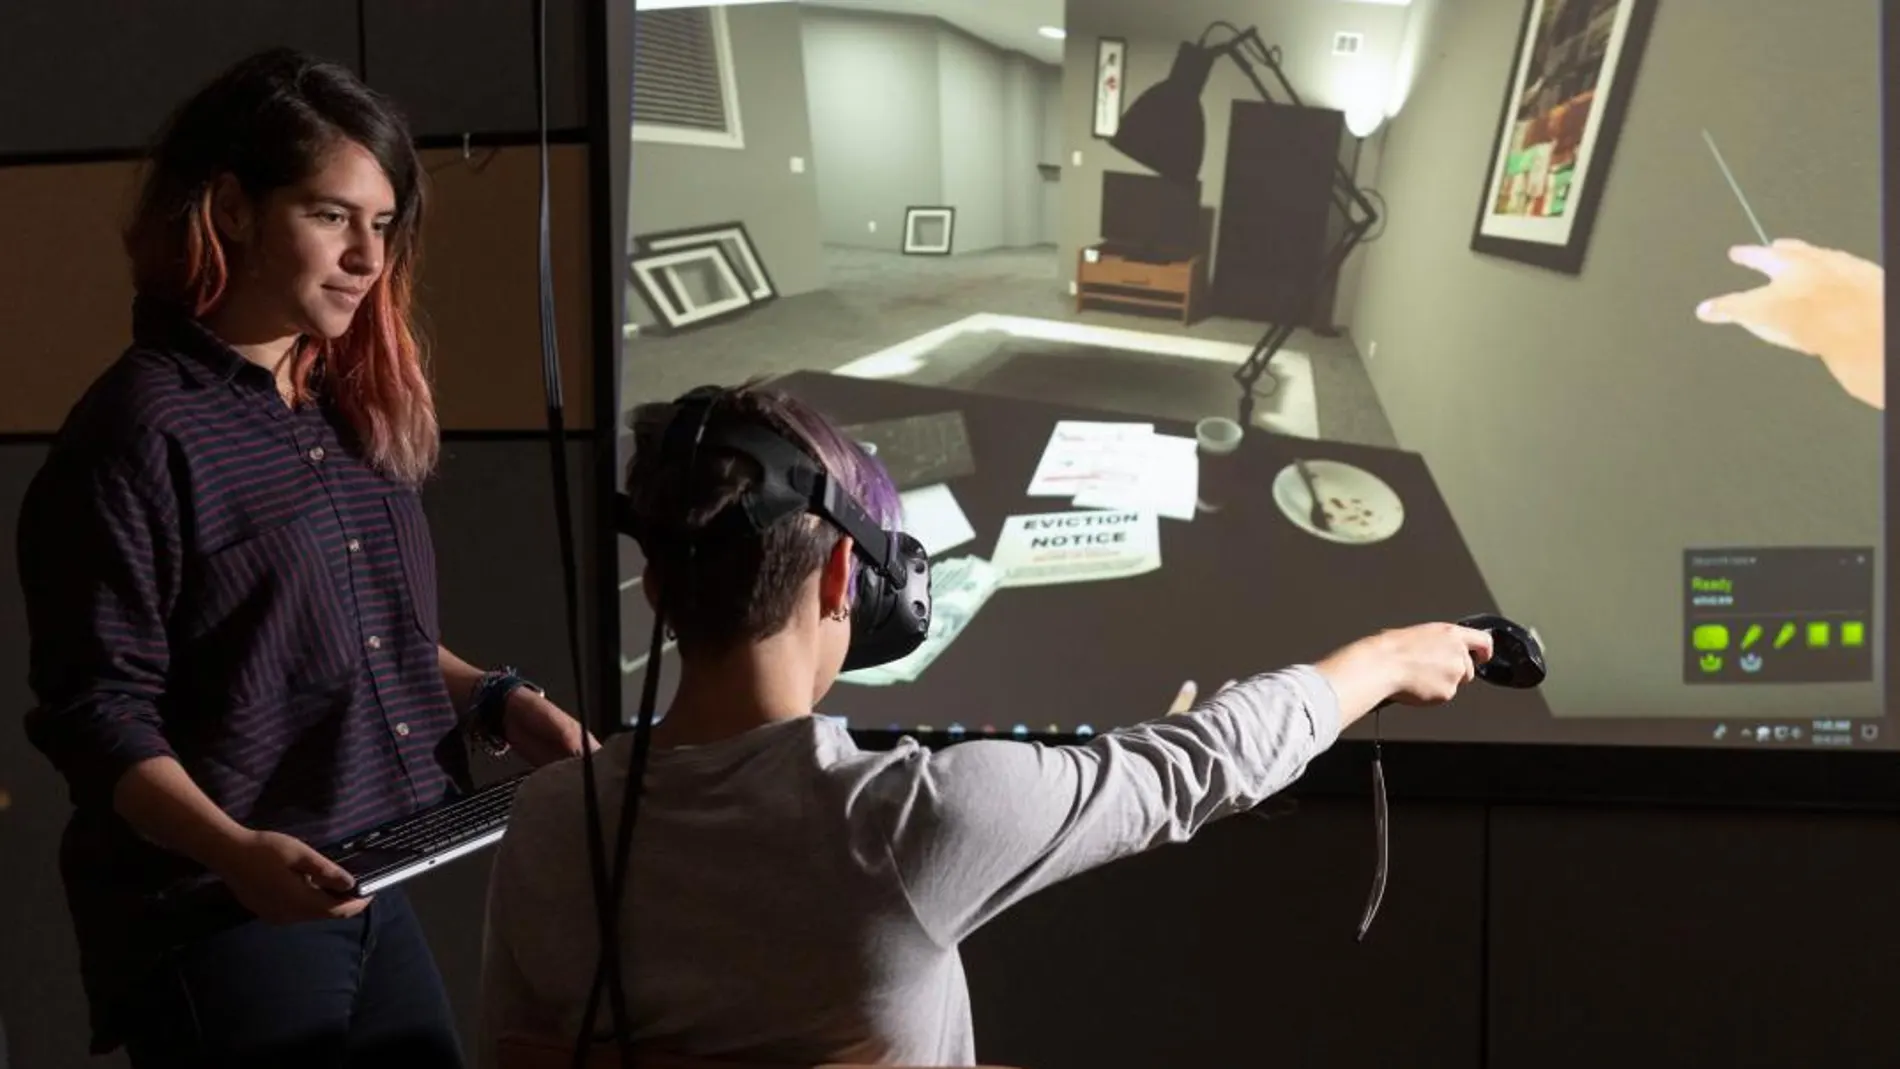 La tecnología de la realidad virtual permite conocer de una manera más cercana e intensa la dolorosa experiencia de perderlo todo y contribuye a aumentar el ánimo de ayudar a los indigentes, según un estudio dado a conocer hoy por la Universidad de Stanford / Efe